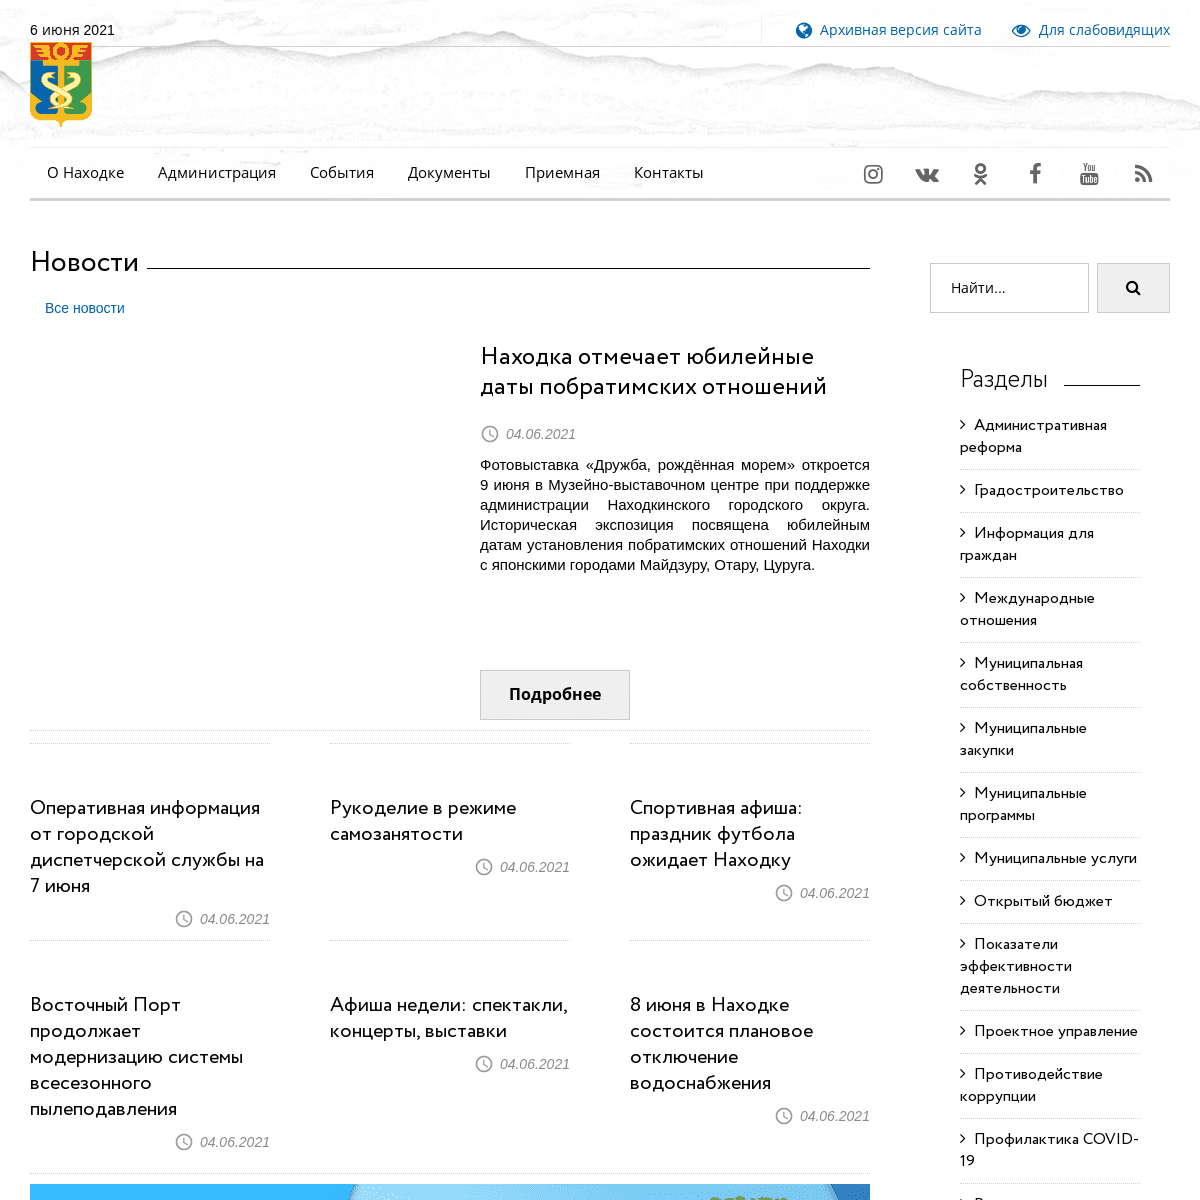 A complete backup of https://nakhodka-city.ru